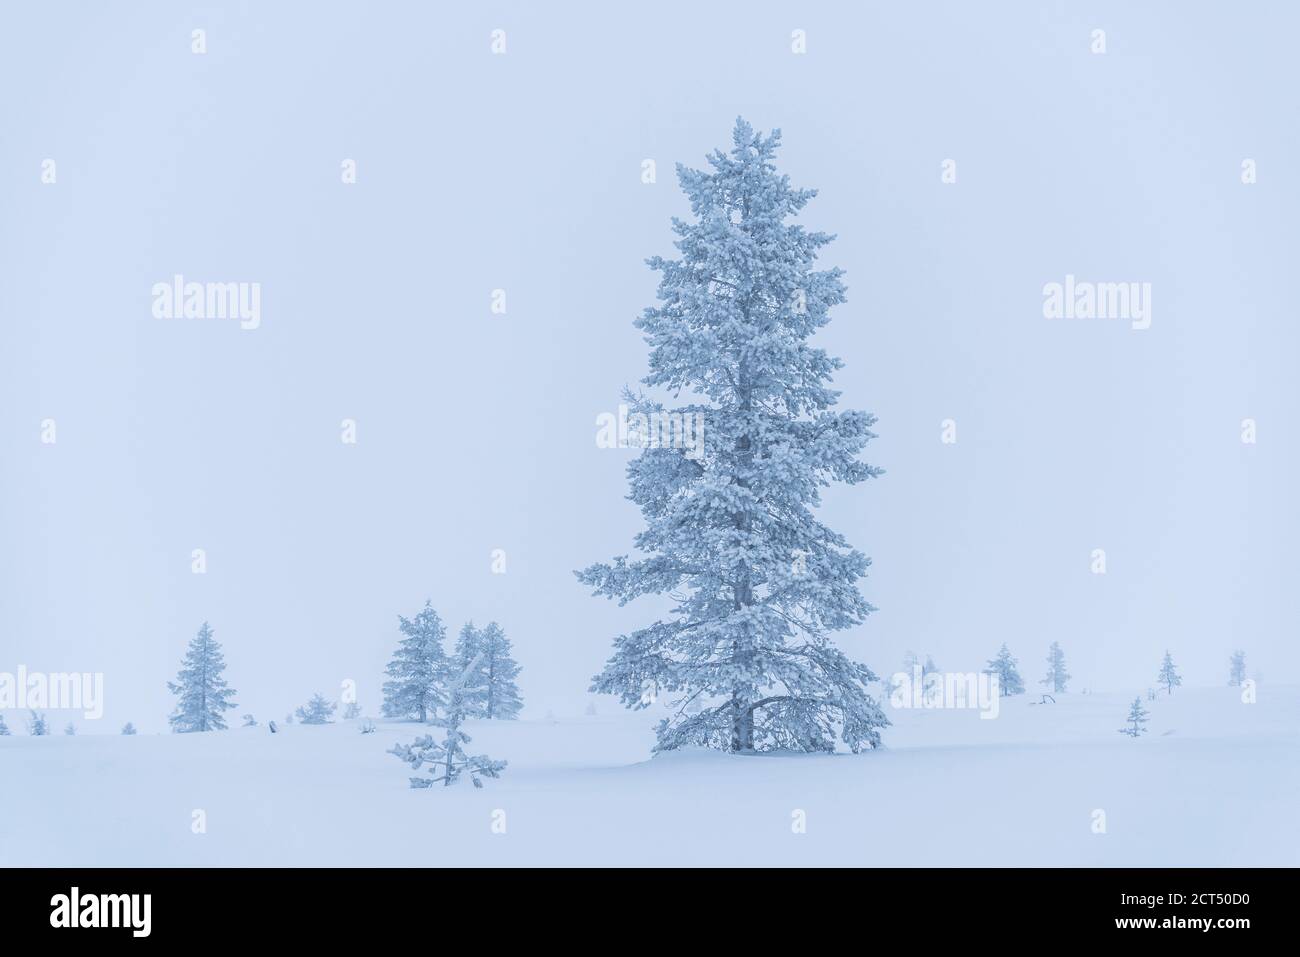 Sombre, isolé, minimaliste hiver magnifique neige couverte paysage de Noël avec des arbres glacés en Laponie, Finlande, cercle arctique, Europe Banque D'Images